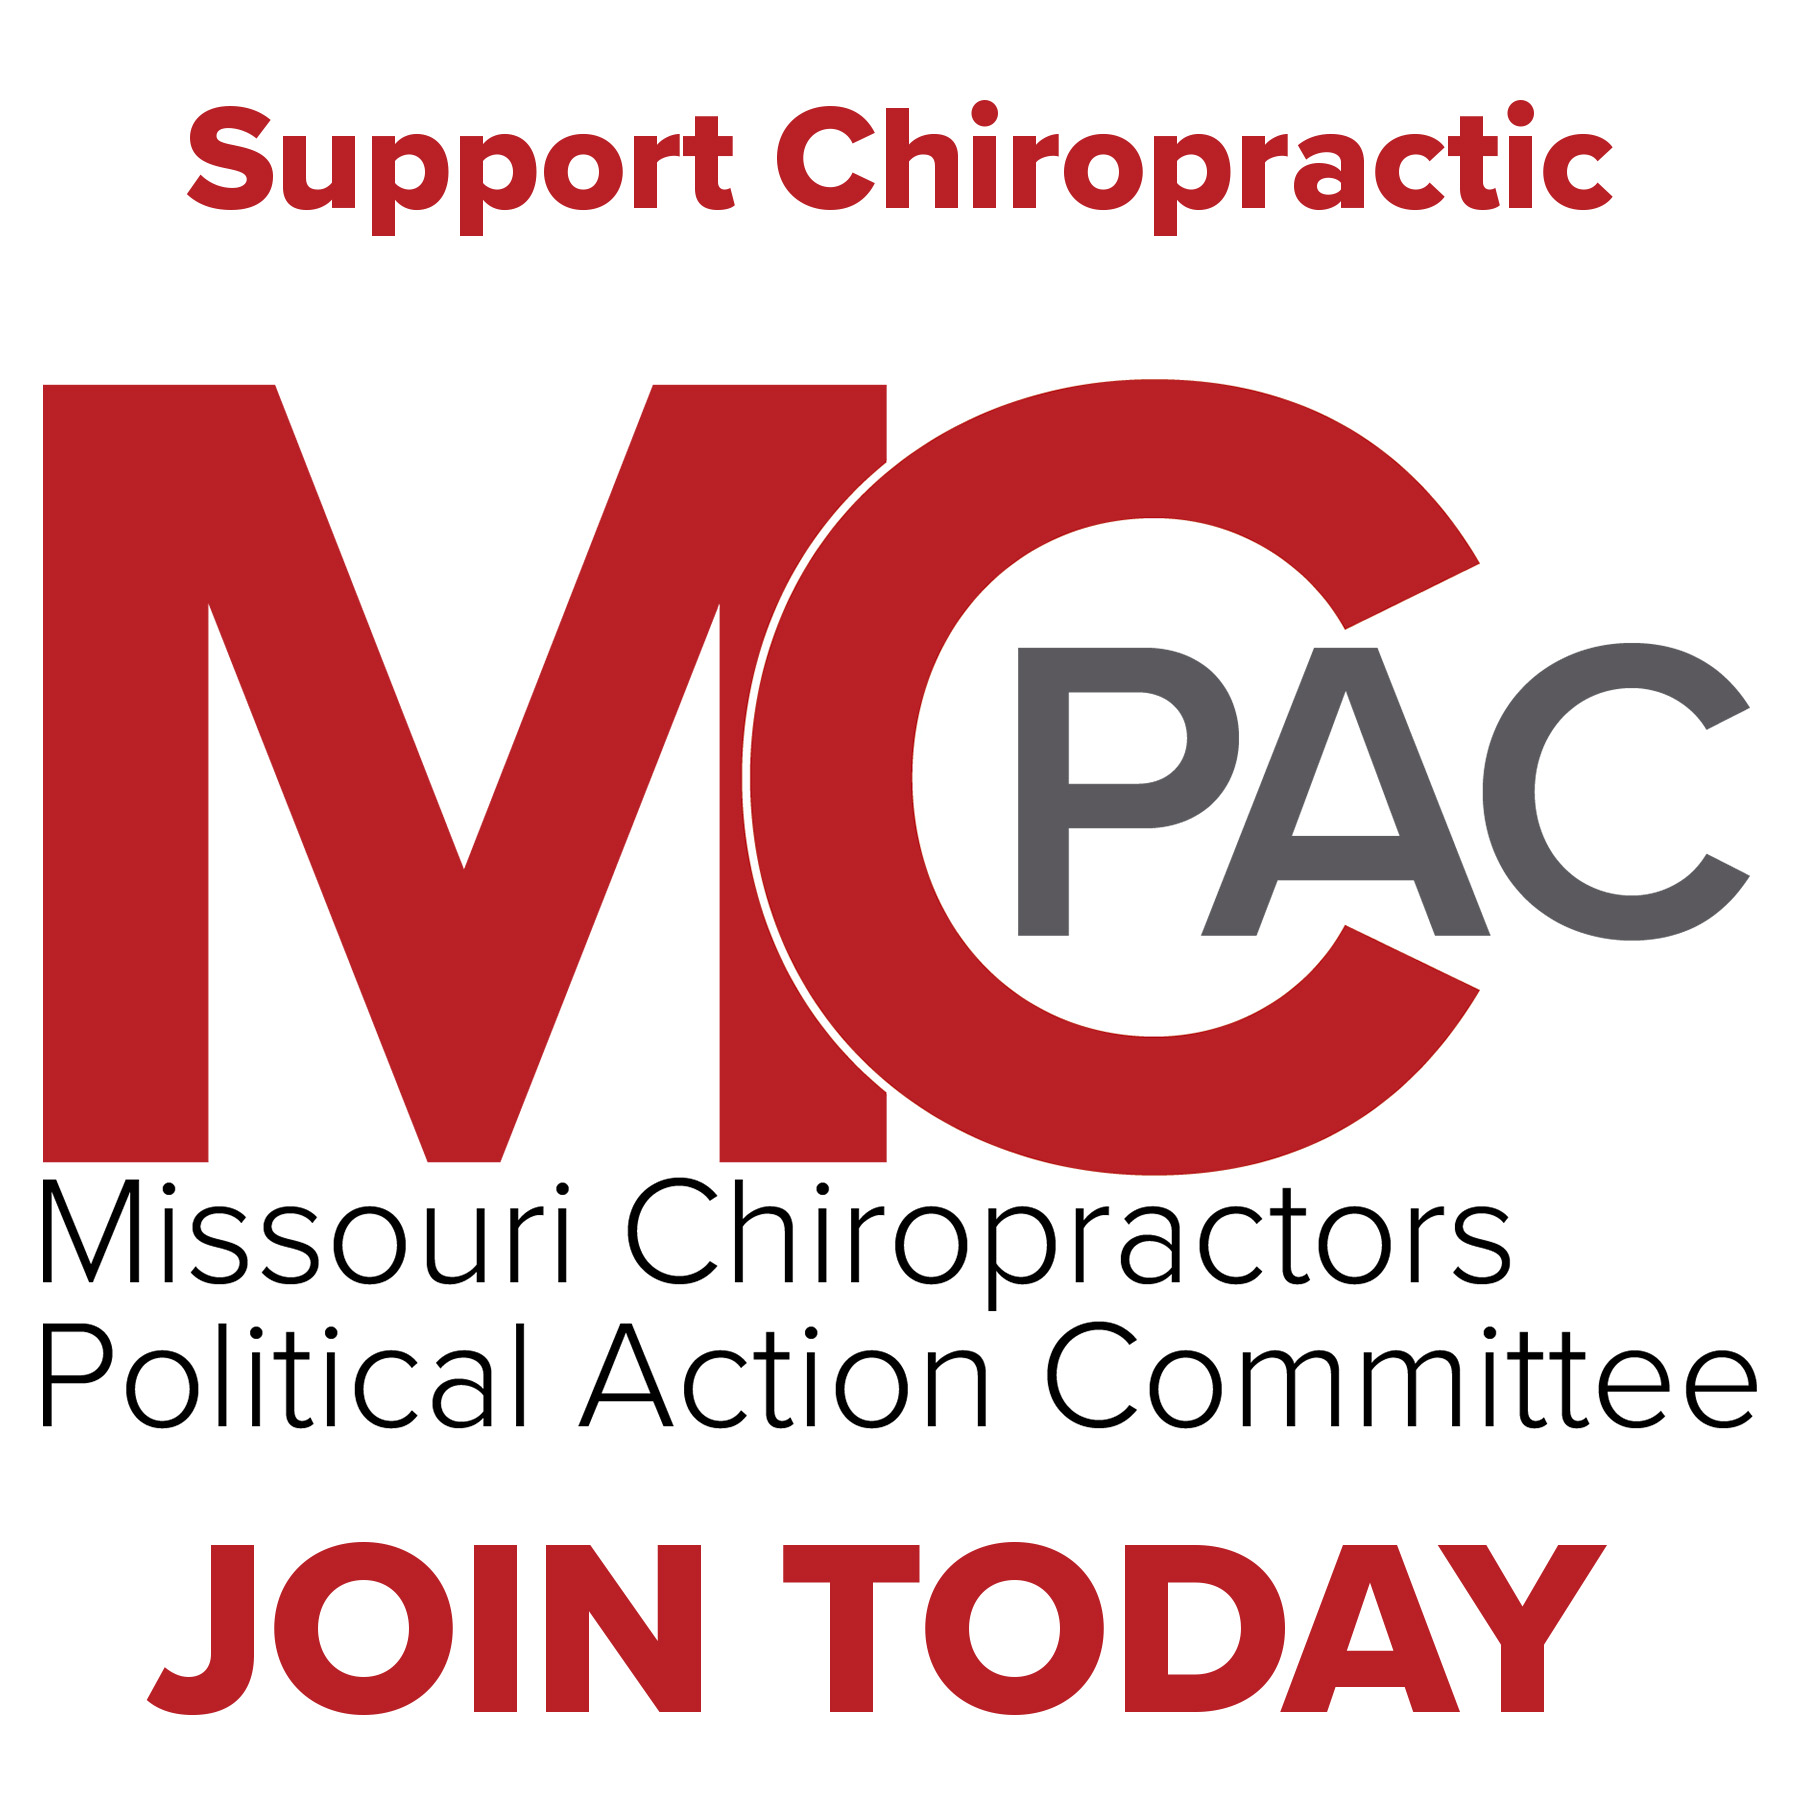 Online CE - Wisconsin Chiropractic Association